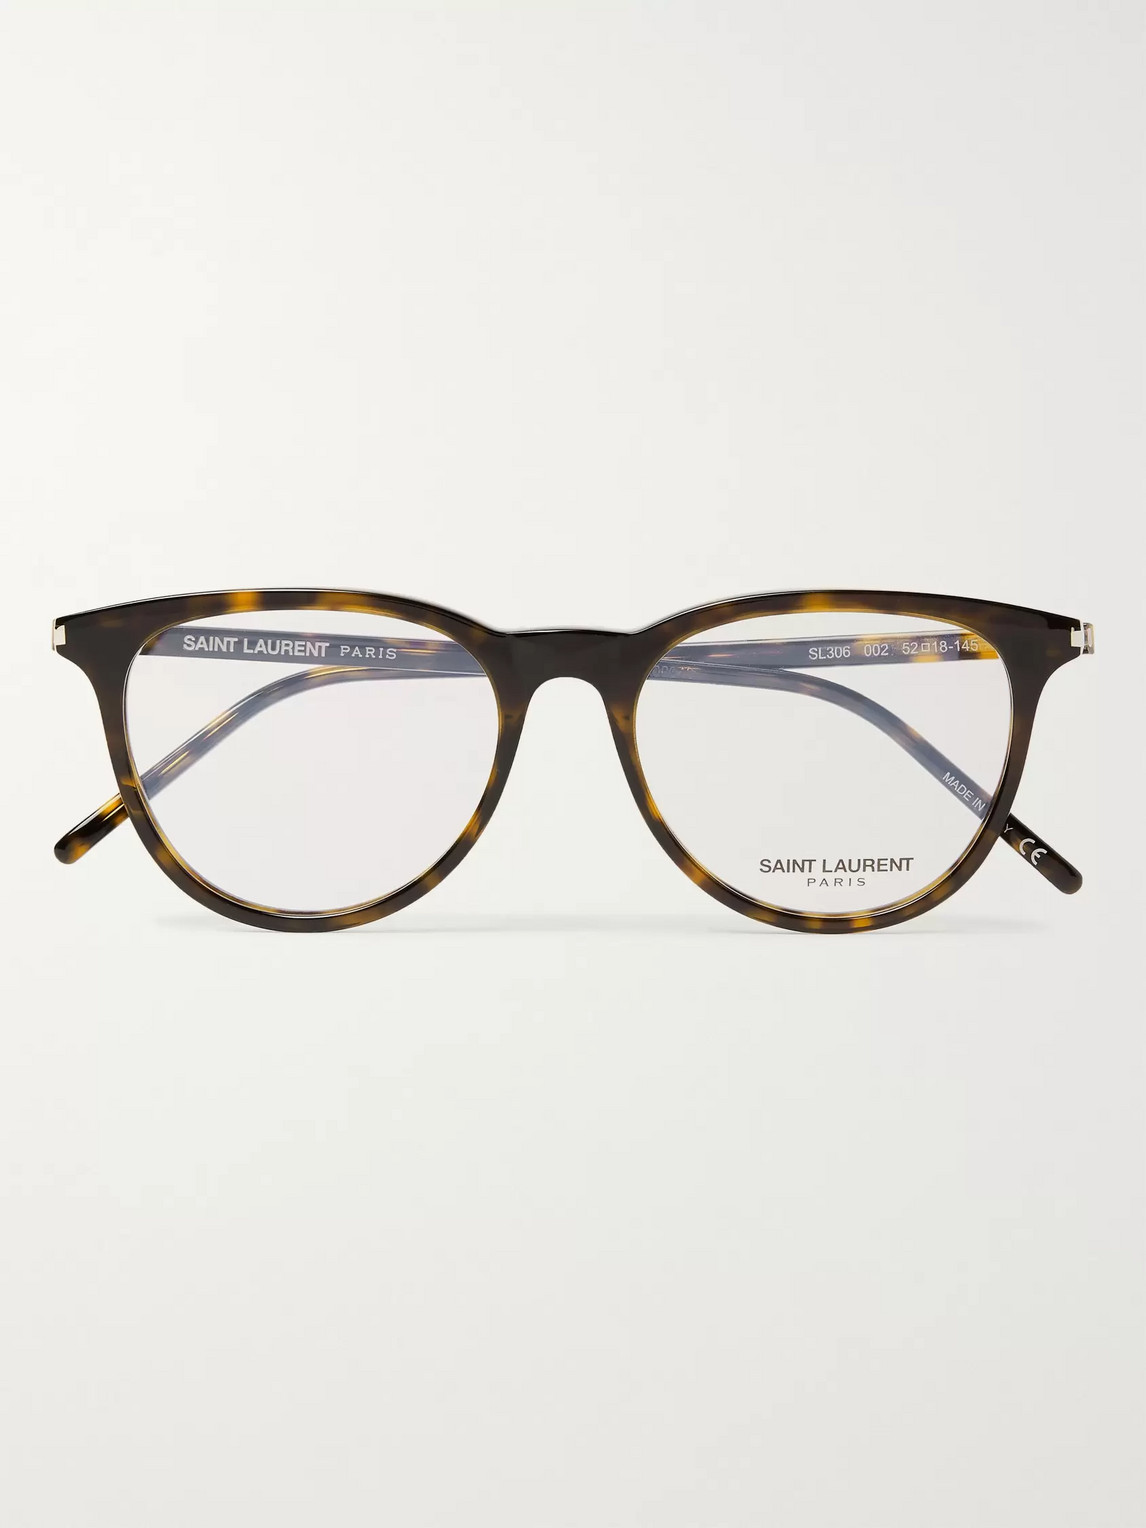 Saint Laurent D-frame Tortoiseshell Acetate Optical Glasses